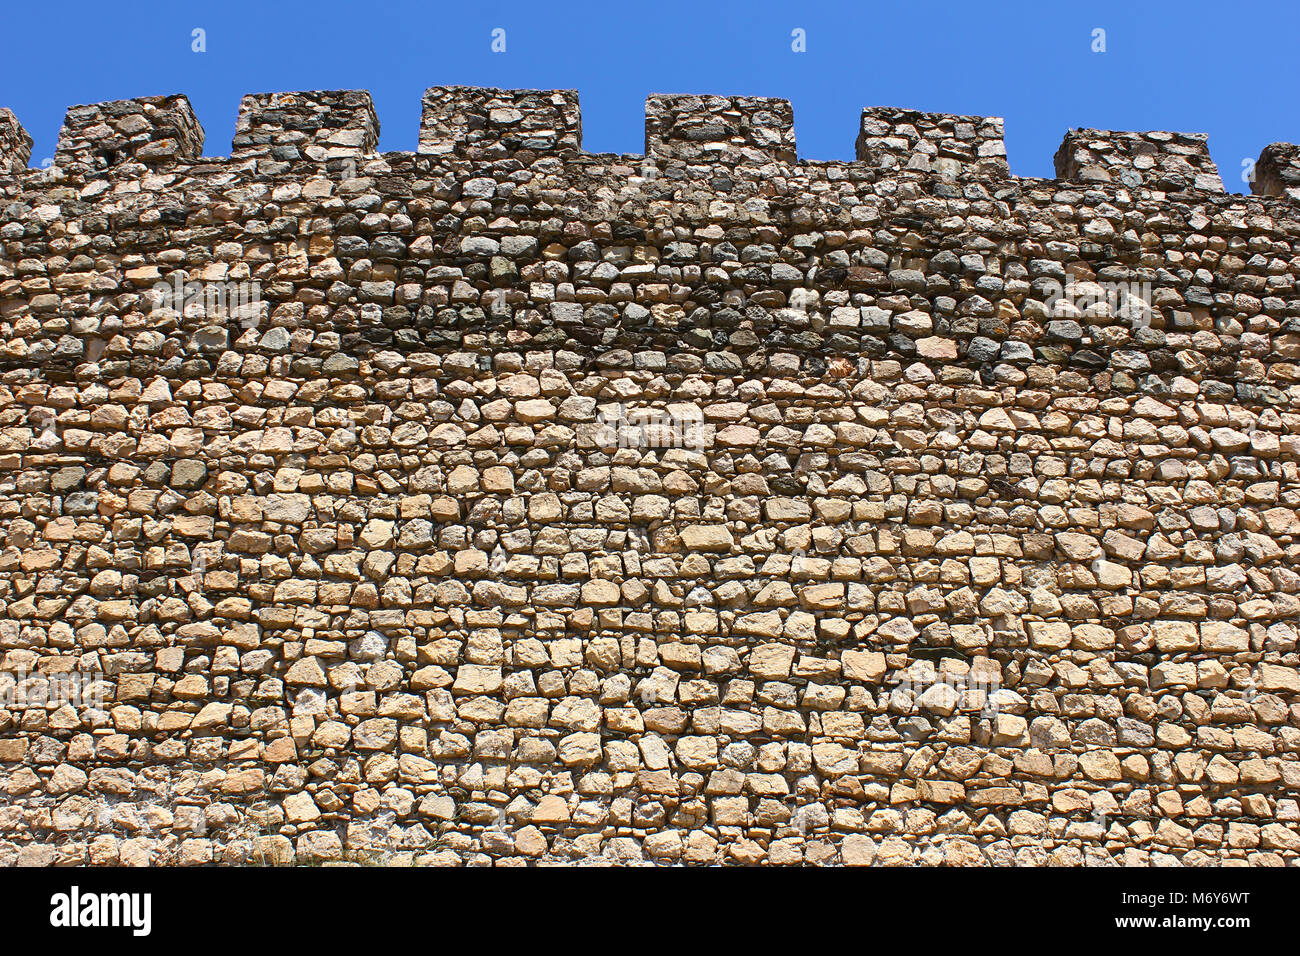 Castle of Arraiolos, Alentejo, Portugal Stock Photo